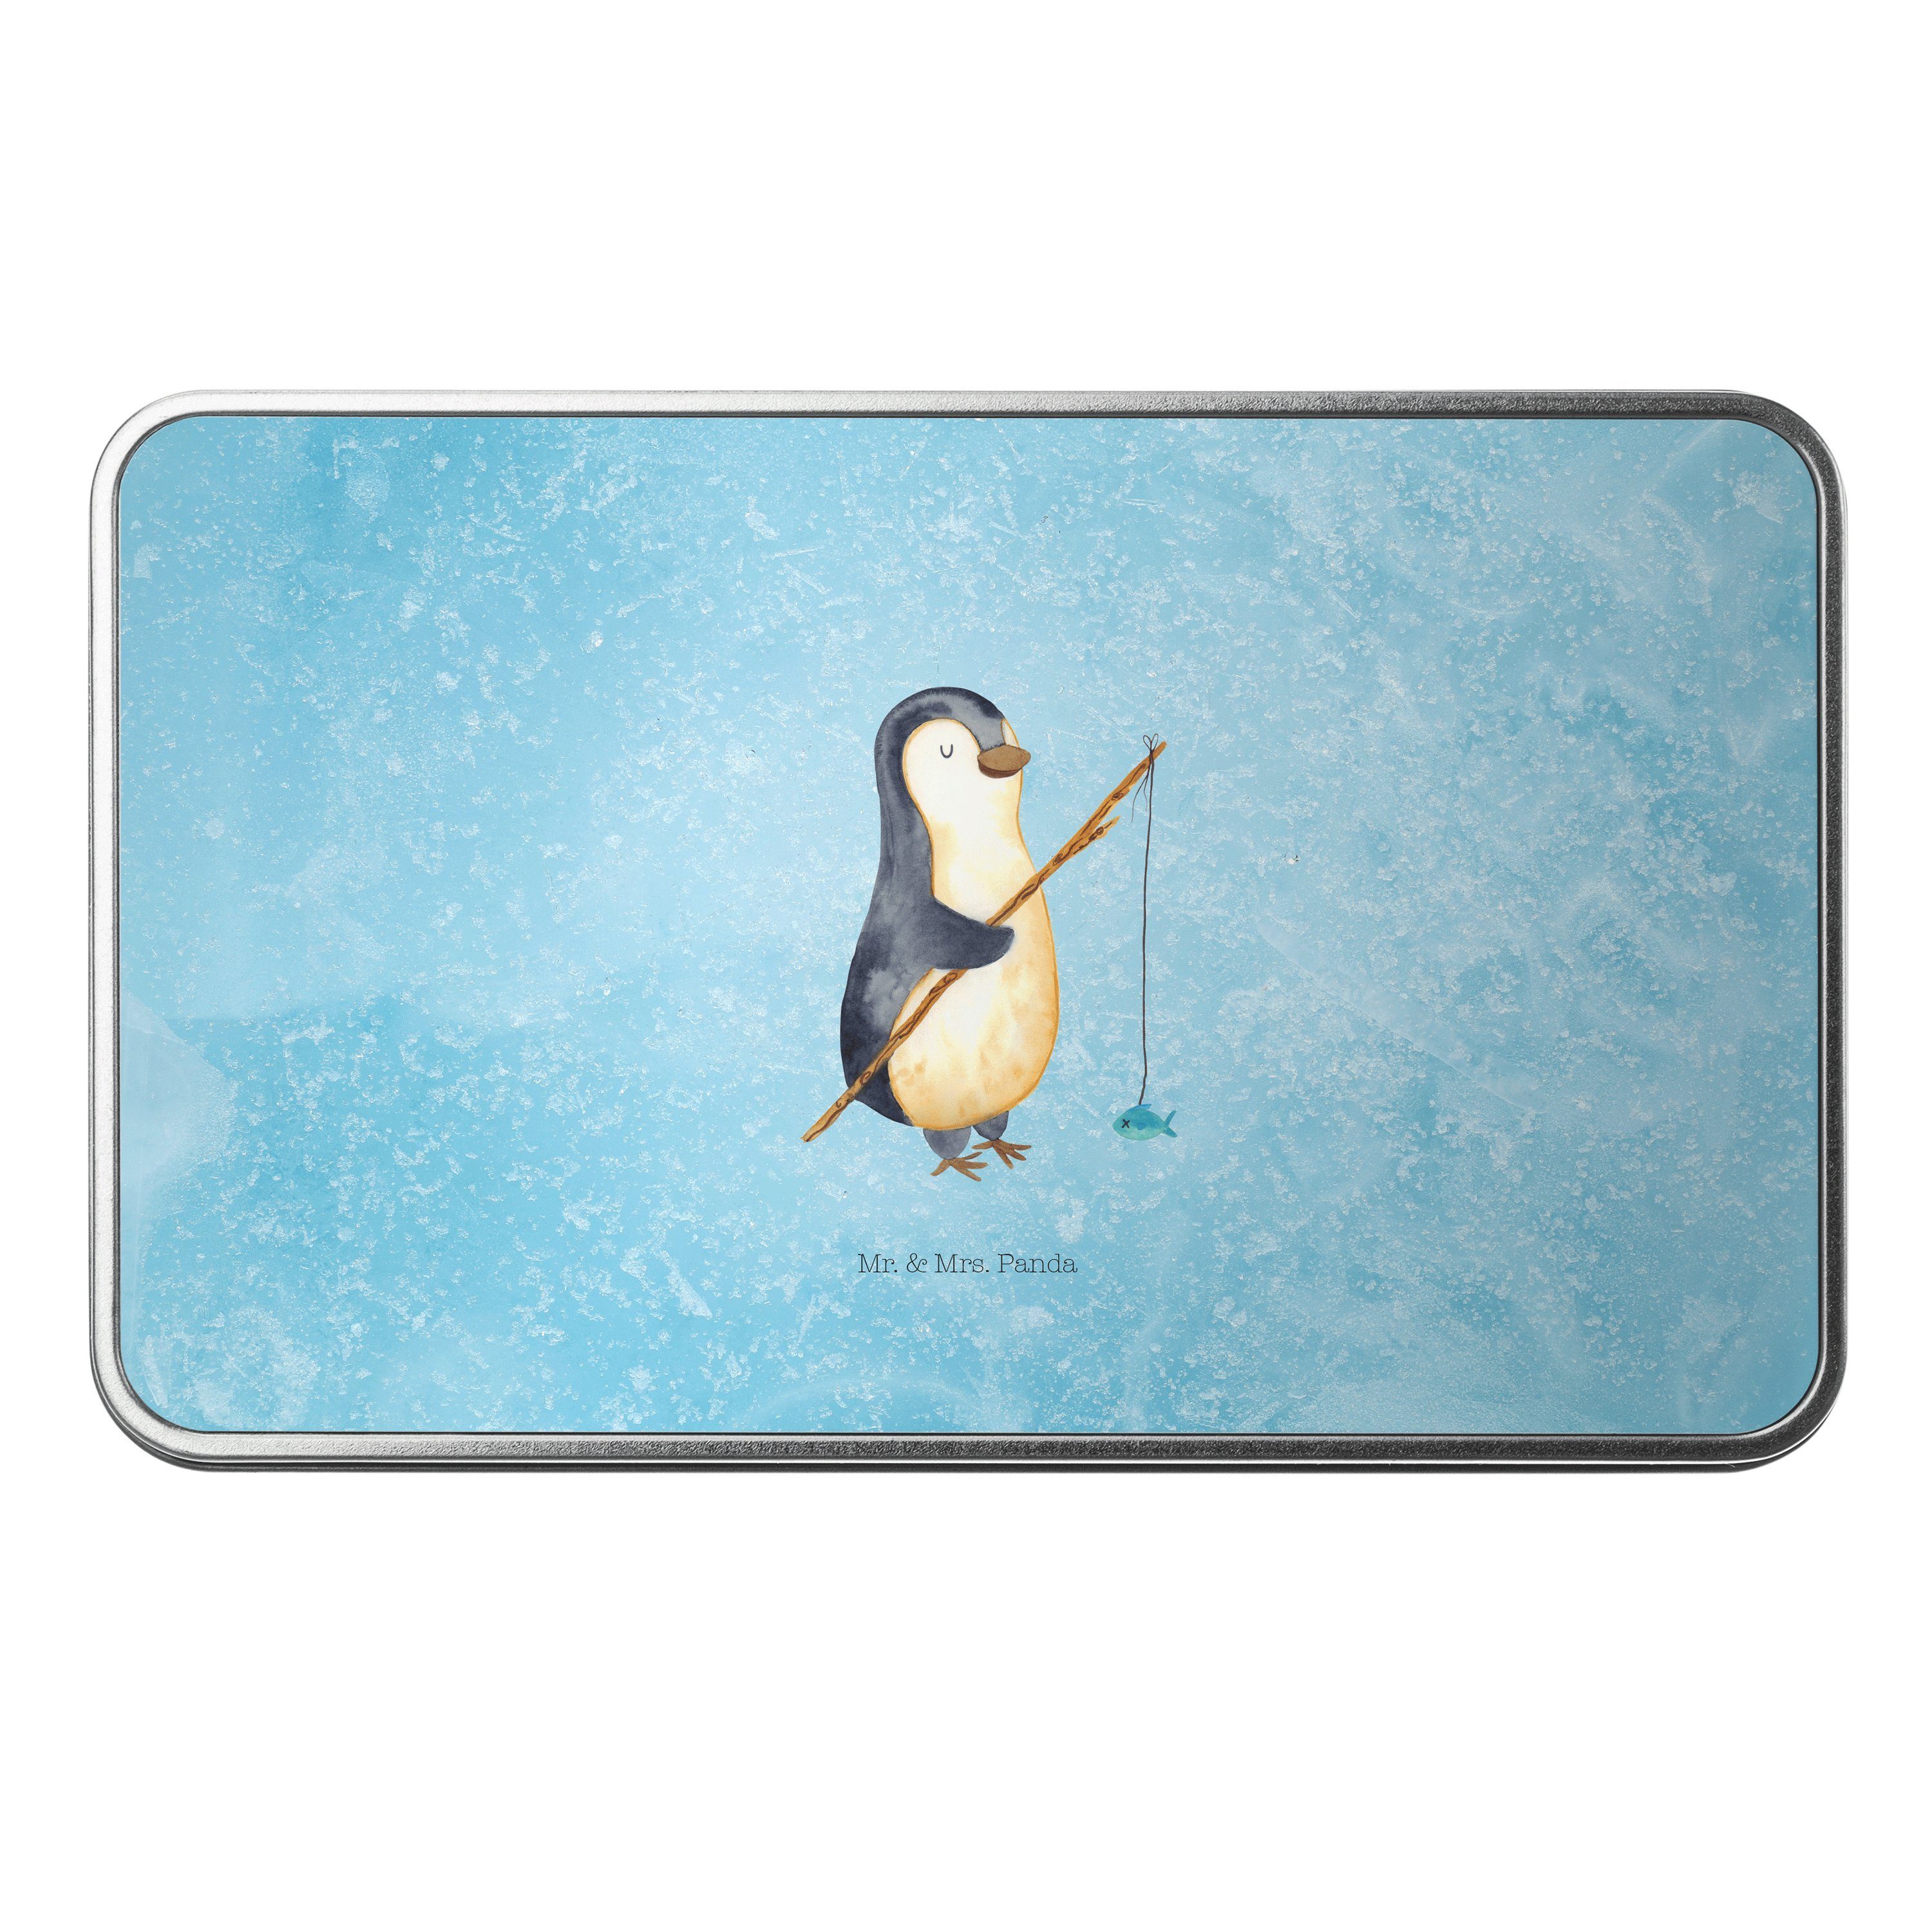 Mr. & Mrs. Panda Dose Pinguin Angler - Eisblau - Geschenk, Urlaub, Motivation, Angelurlaub, (1 St)